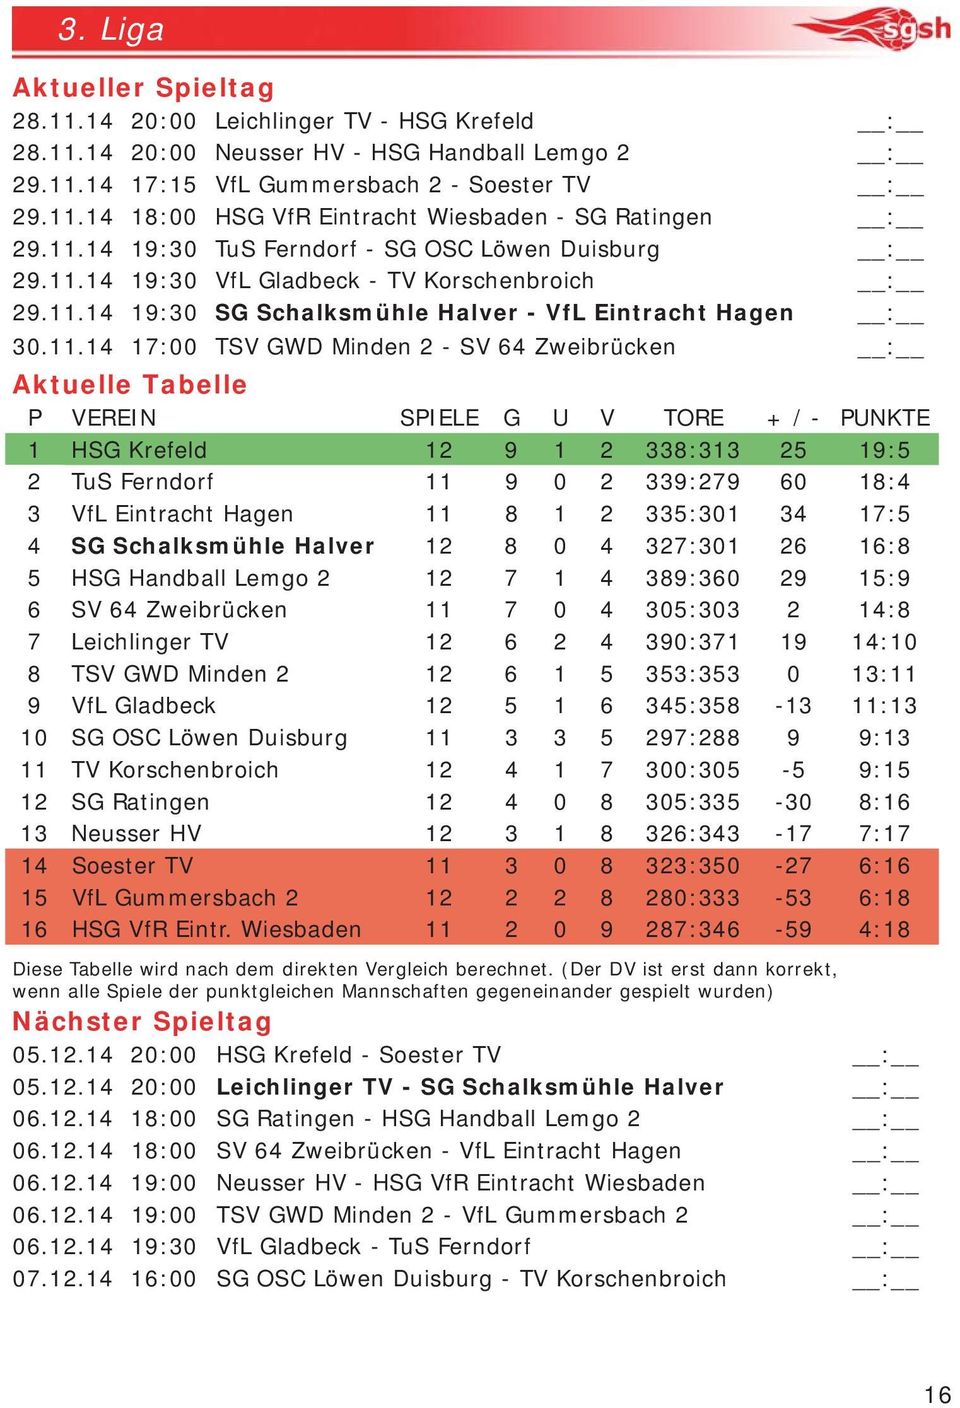 64 Zweibrücken : Aktuelle Tabelle P VEREIN SPIELE G U V TORE + / - PUNKTE 1 HSG Krefeld 12 9 1 2 338:313 25 19:5 2 TuS Ferndorf 11 9 0 2 339:279 60 18:4 3 VfL Eintracht Hagen 11 8 1 2 335:301 34 17:5